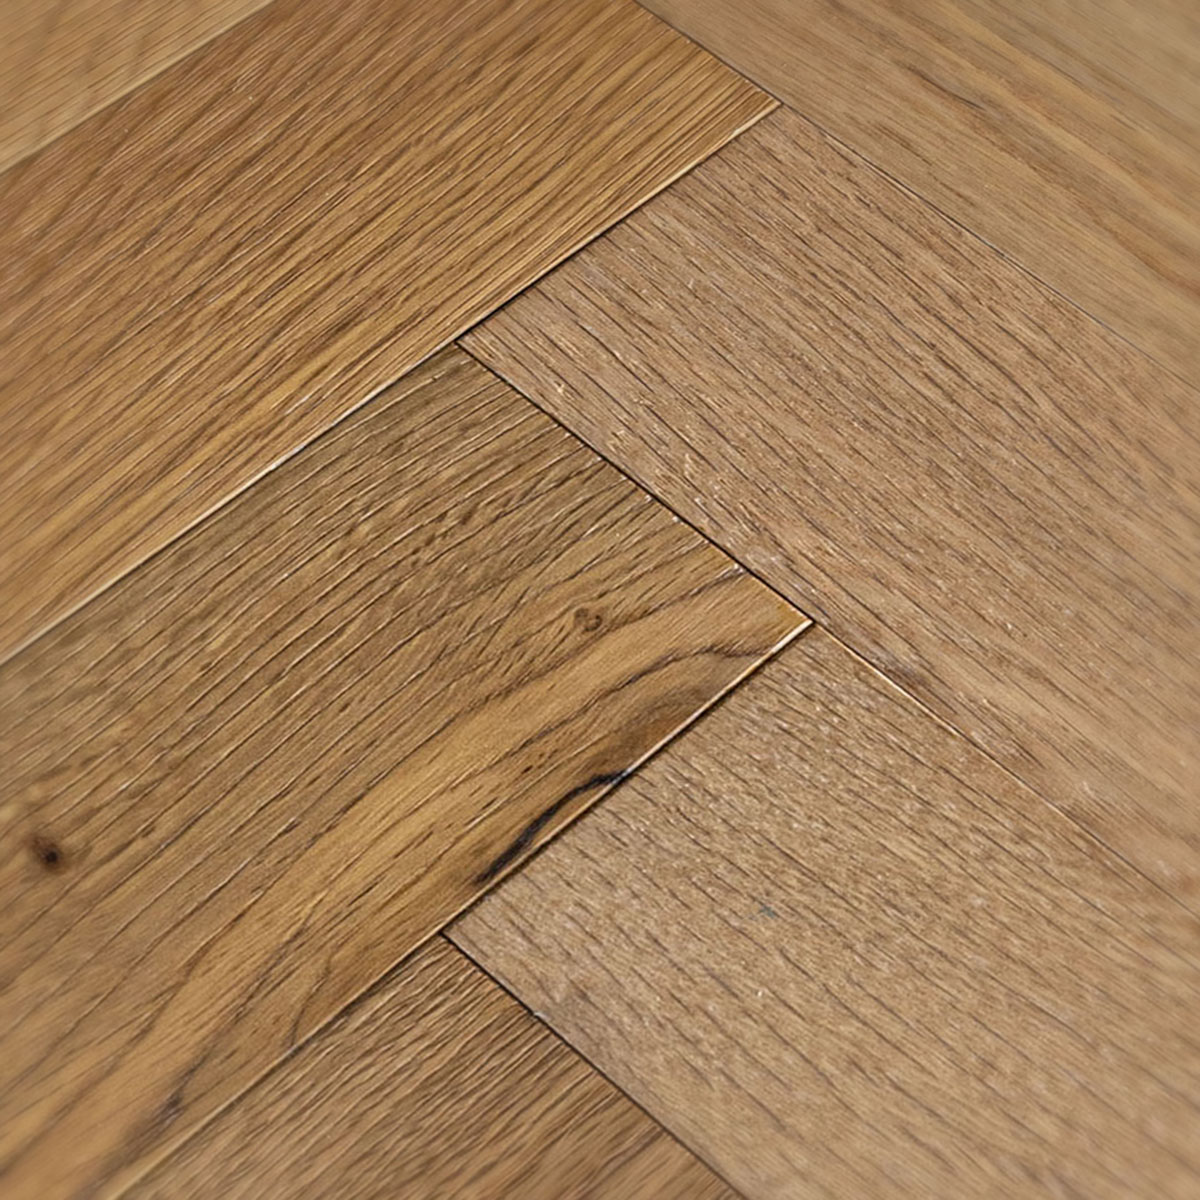 Estone Walk - Light Oak Rustic Grade Parquet Wood Floor